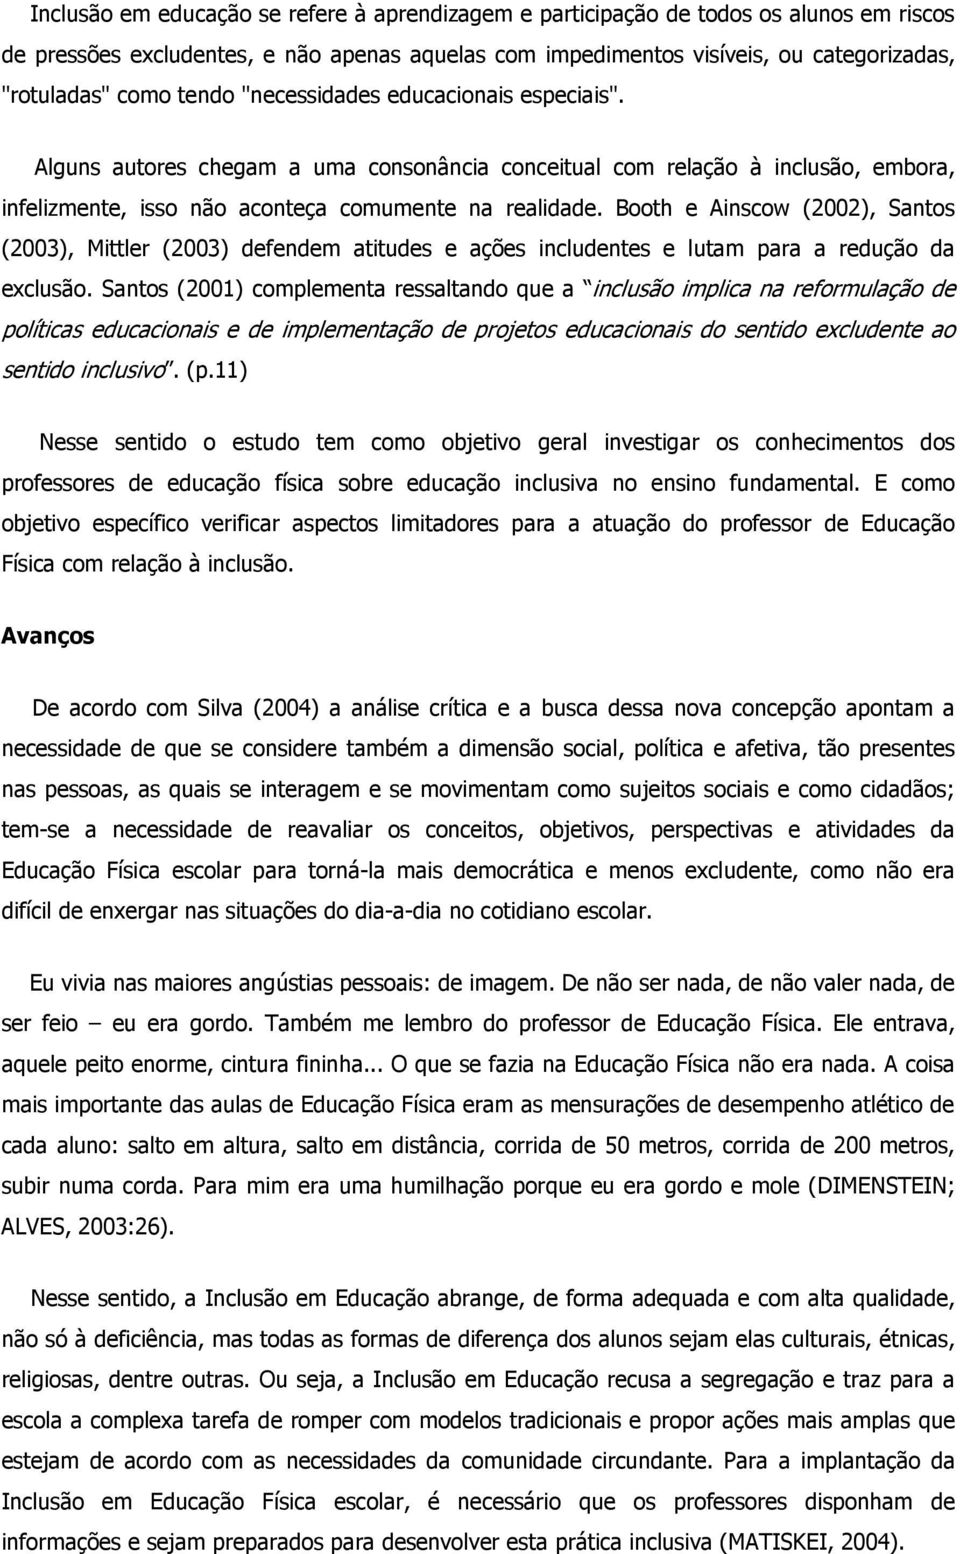 Booth e Ainscow (2002), Santos (2003), Mittler (2003) defendem atitudes e ações includentes e lutam para a redução da exclusão.